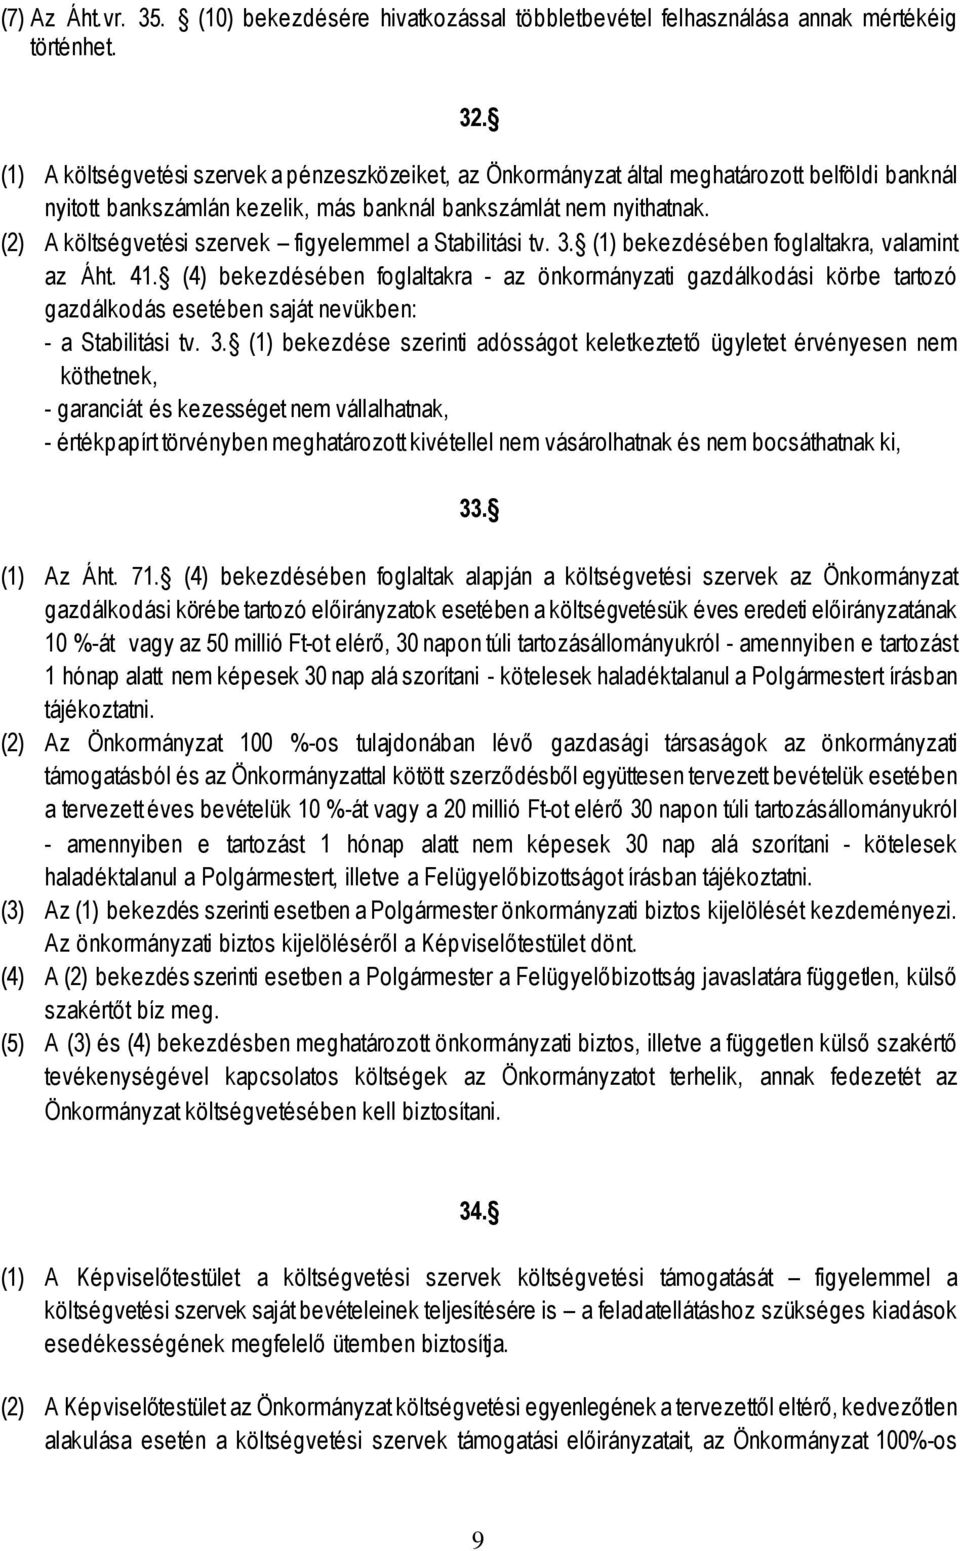 (2) A költségvetési szervek figyelemmel a Stabilitási tv. 3. (1) bekezdésében foglaltakra, valamint az Áht. 41.